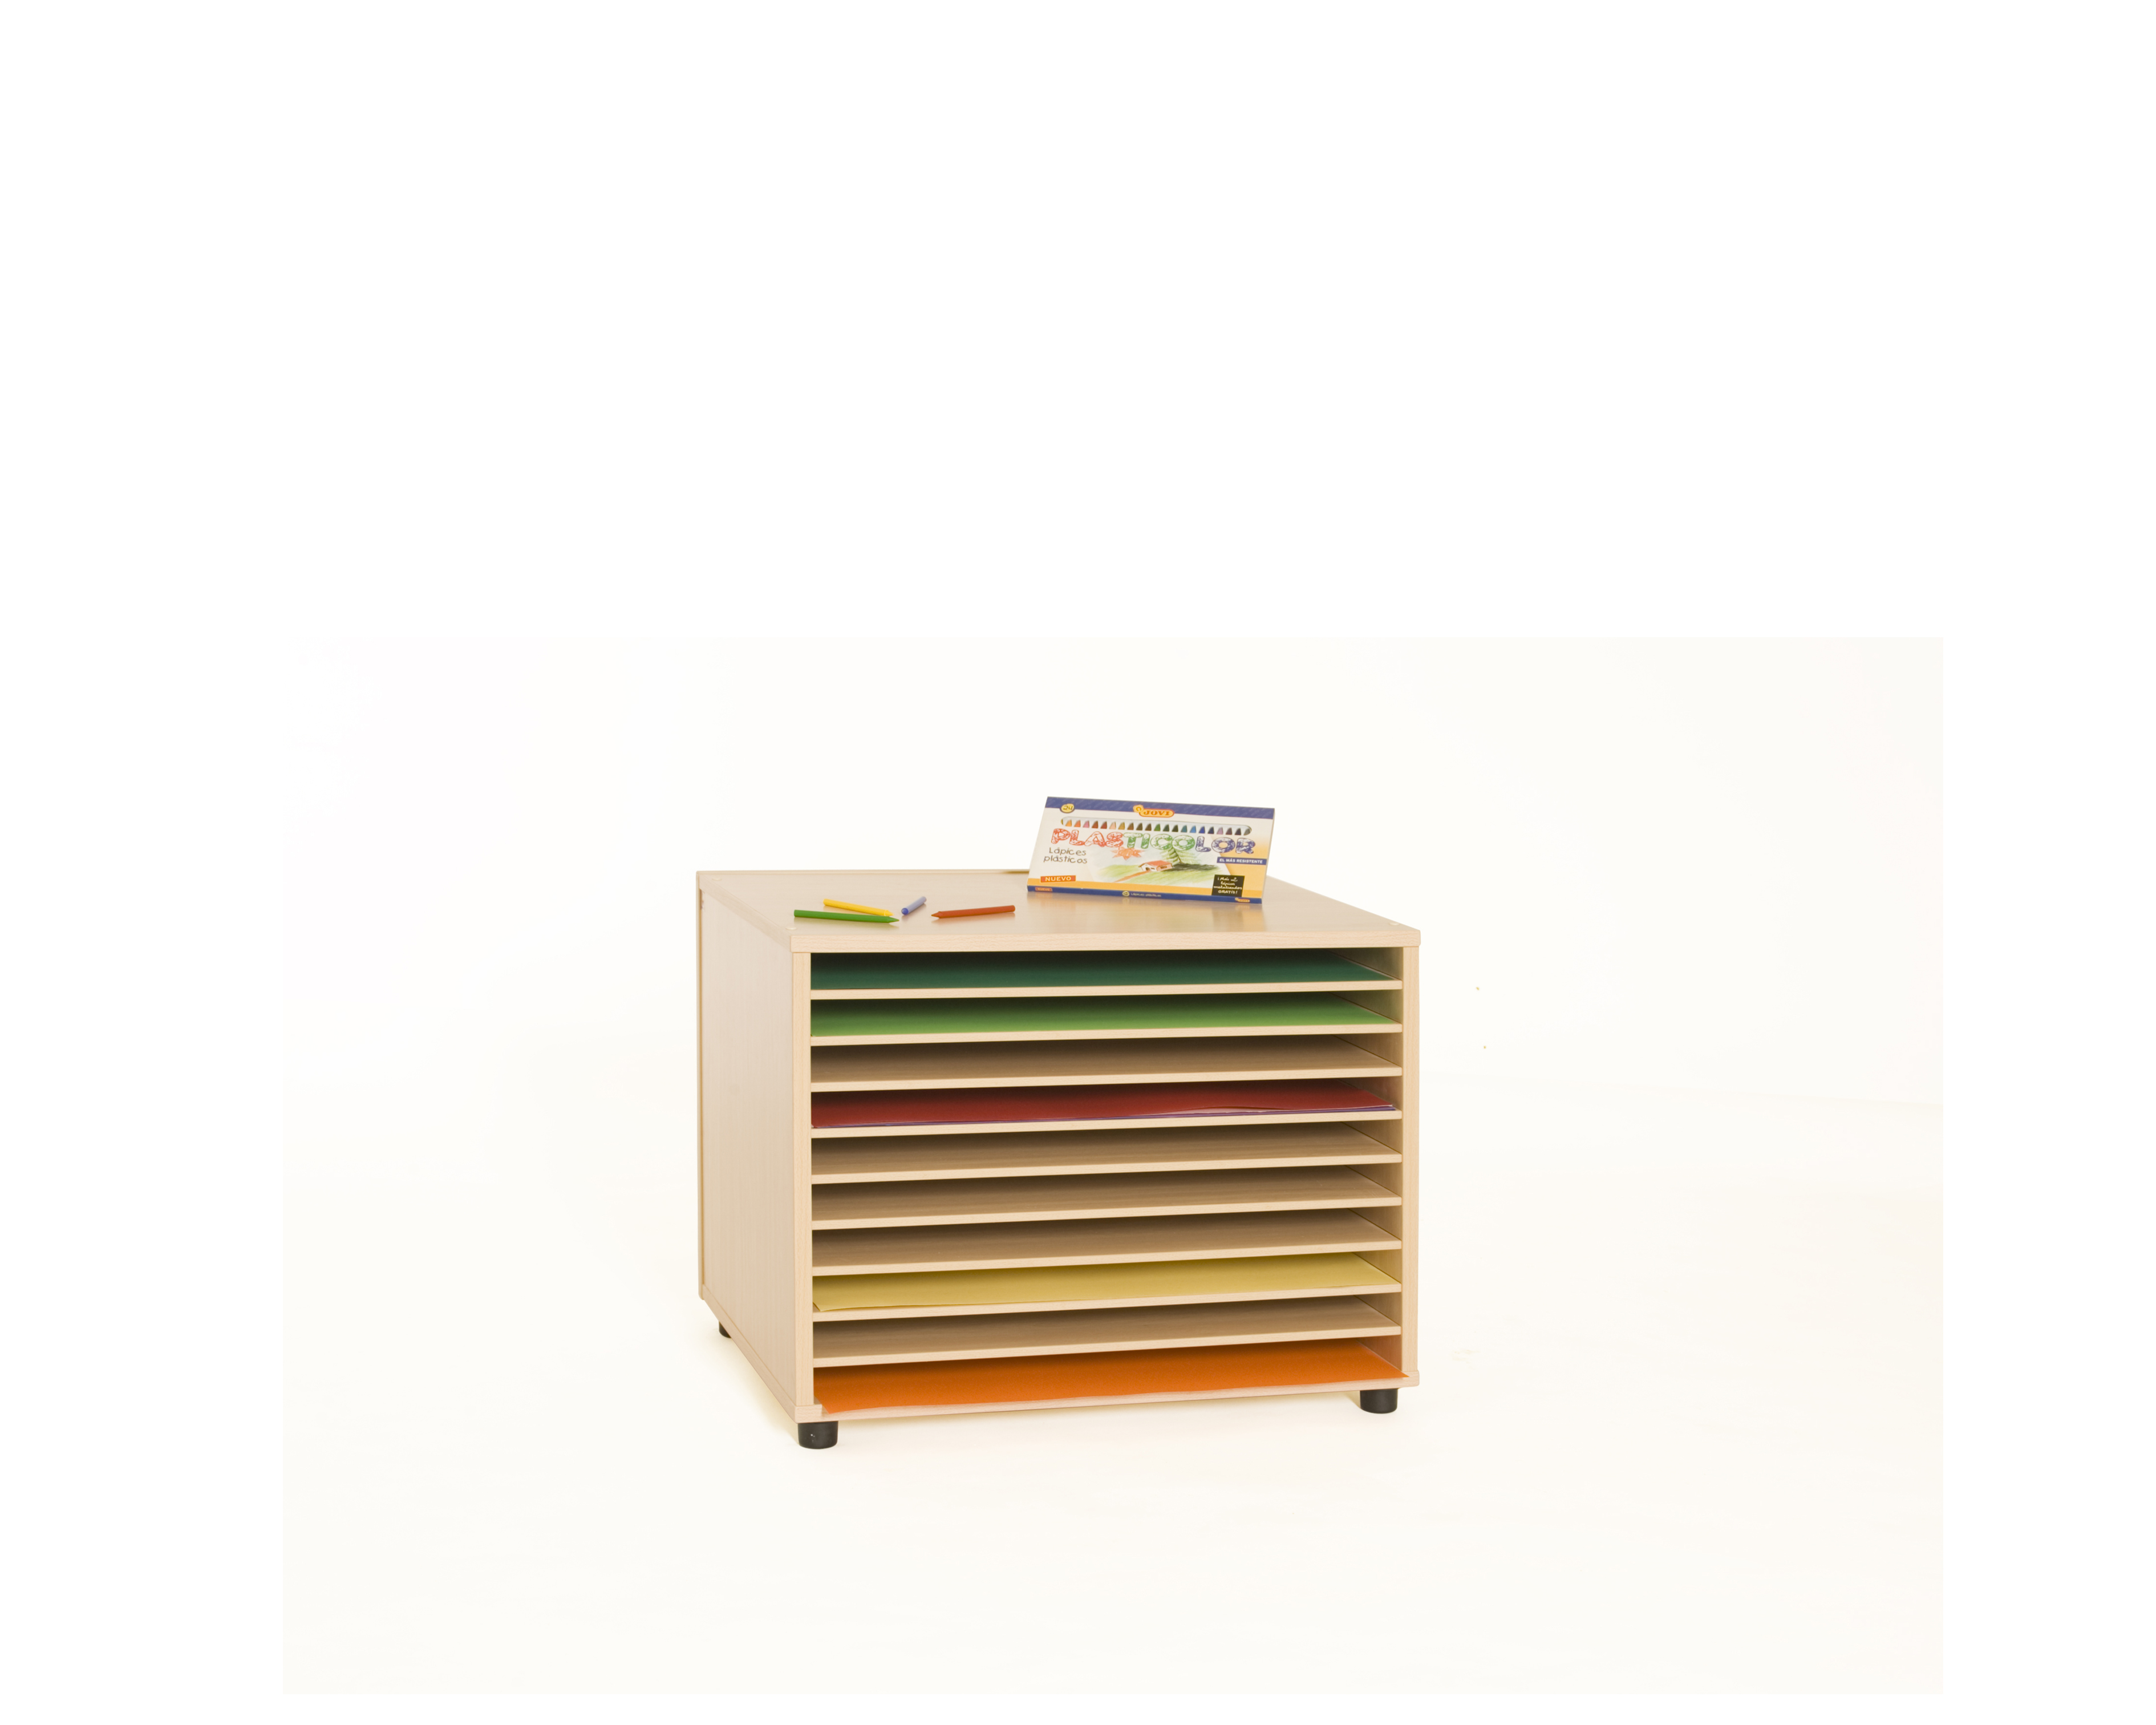 600908 - Mueble archivador de cartulinas horizontal, Mobiliario Escolar